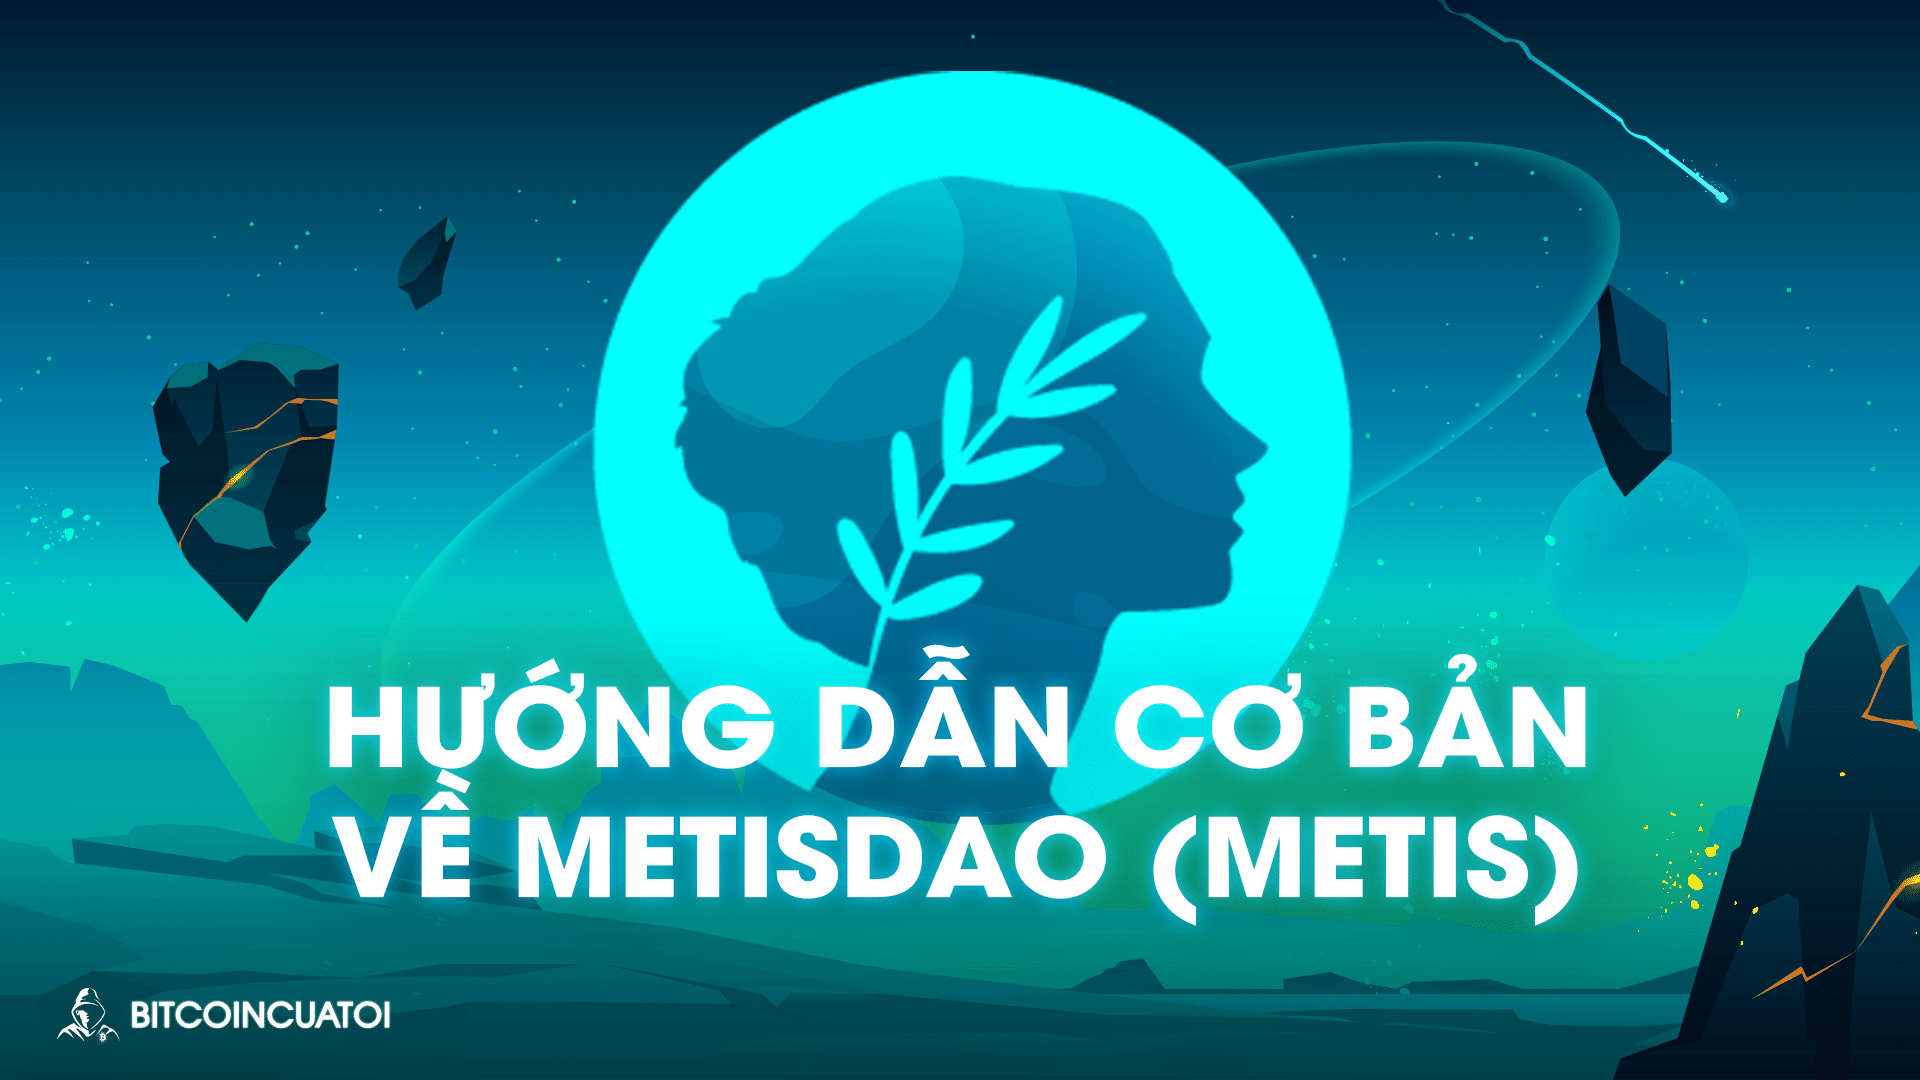 Hướng dẫn cơ bản về MetisDAO (METIS)